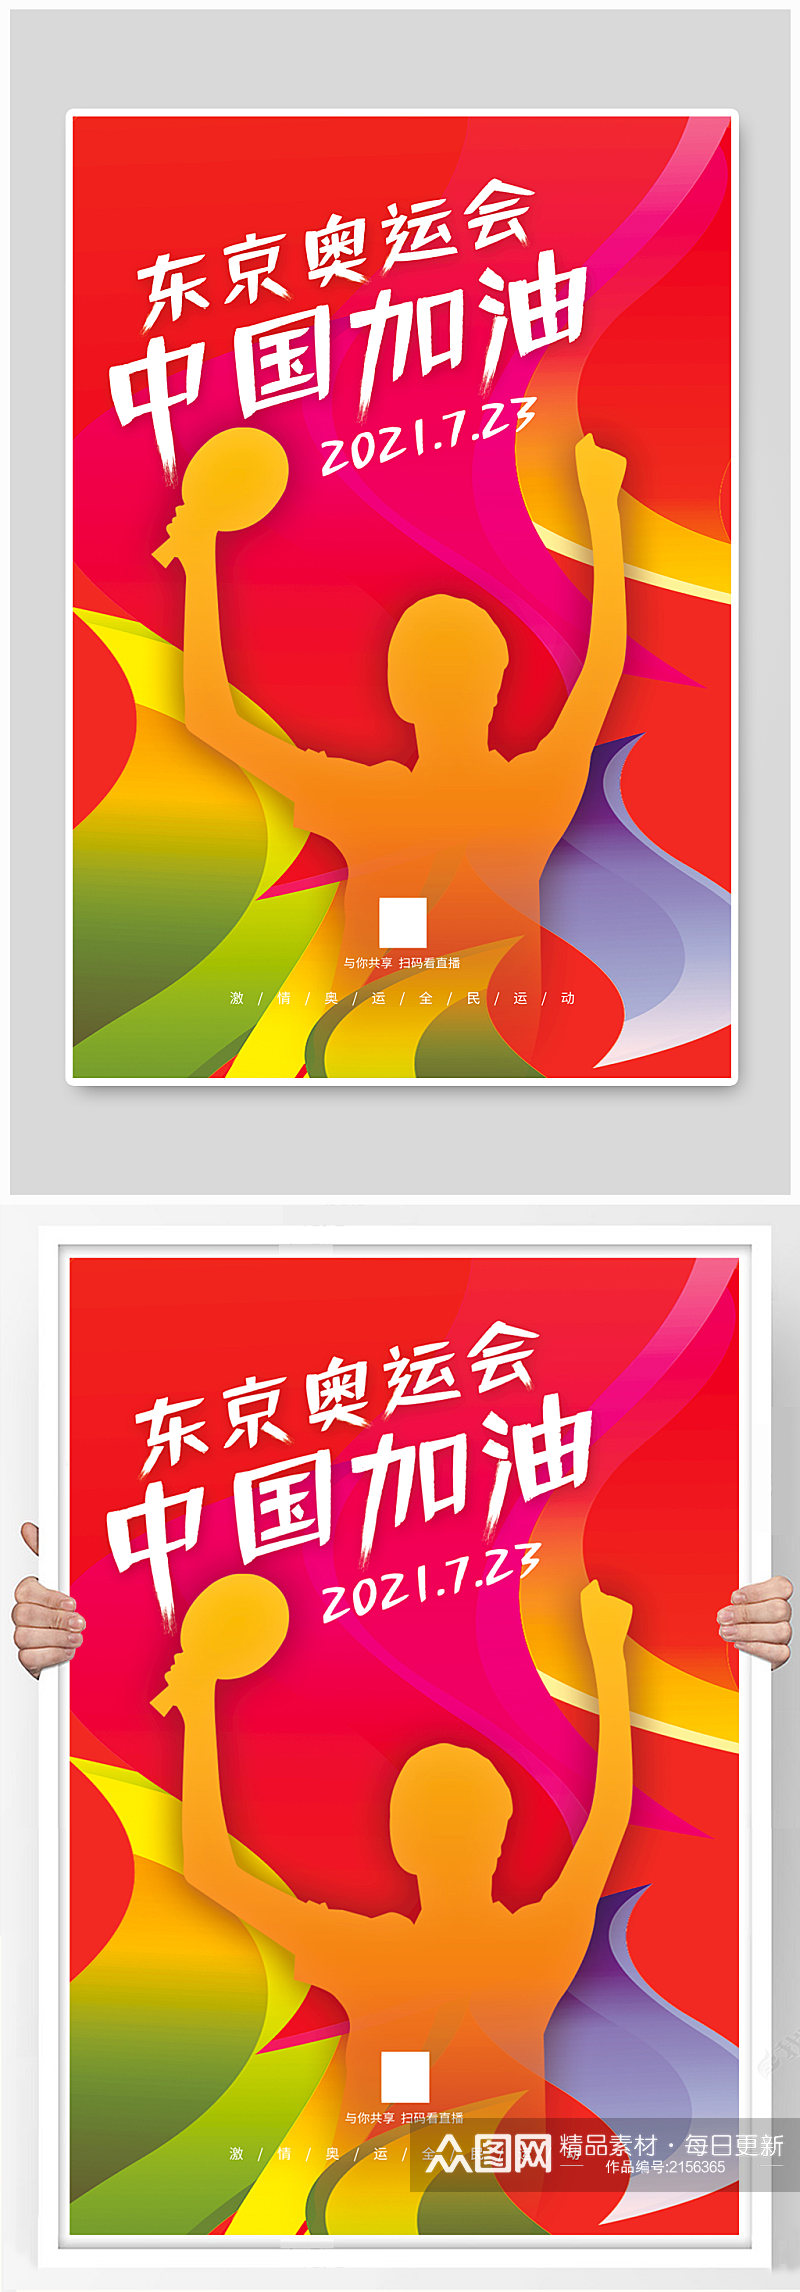 东京奥运会中国加油宣传海报素材